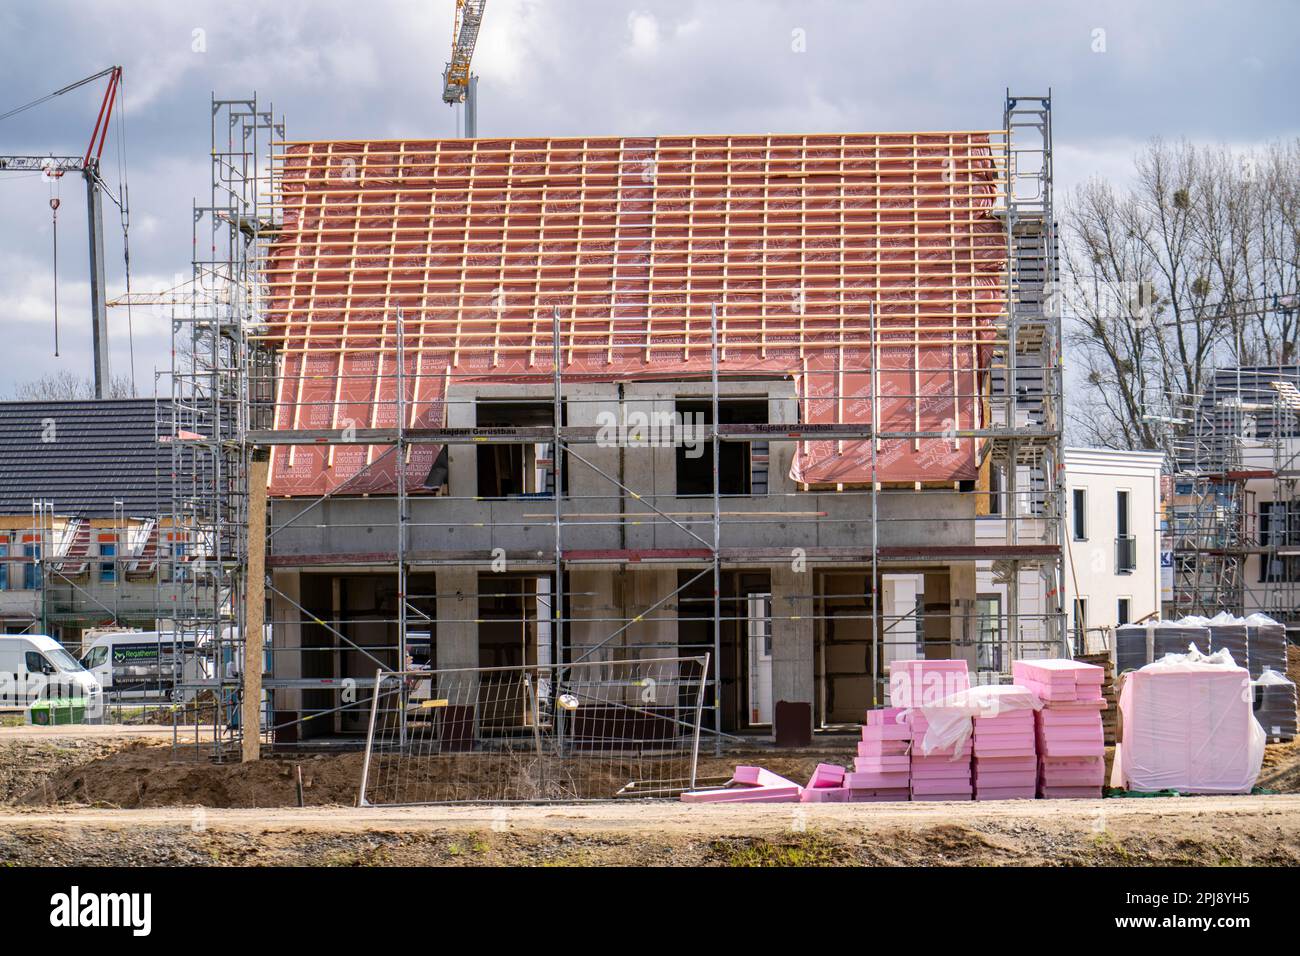 Nouveau quartier de développement, environ 140 villas individuelles et semi-individuelles en cours de construction dans le sud de Duisburg, différents développeurs, coquillages, constructio Banque D'Images